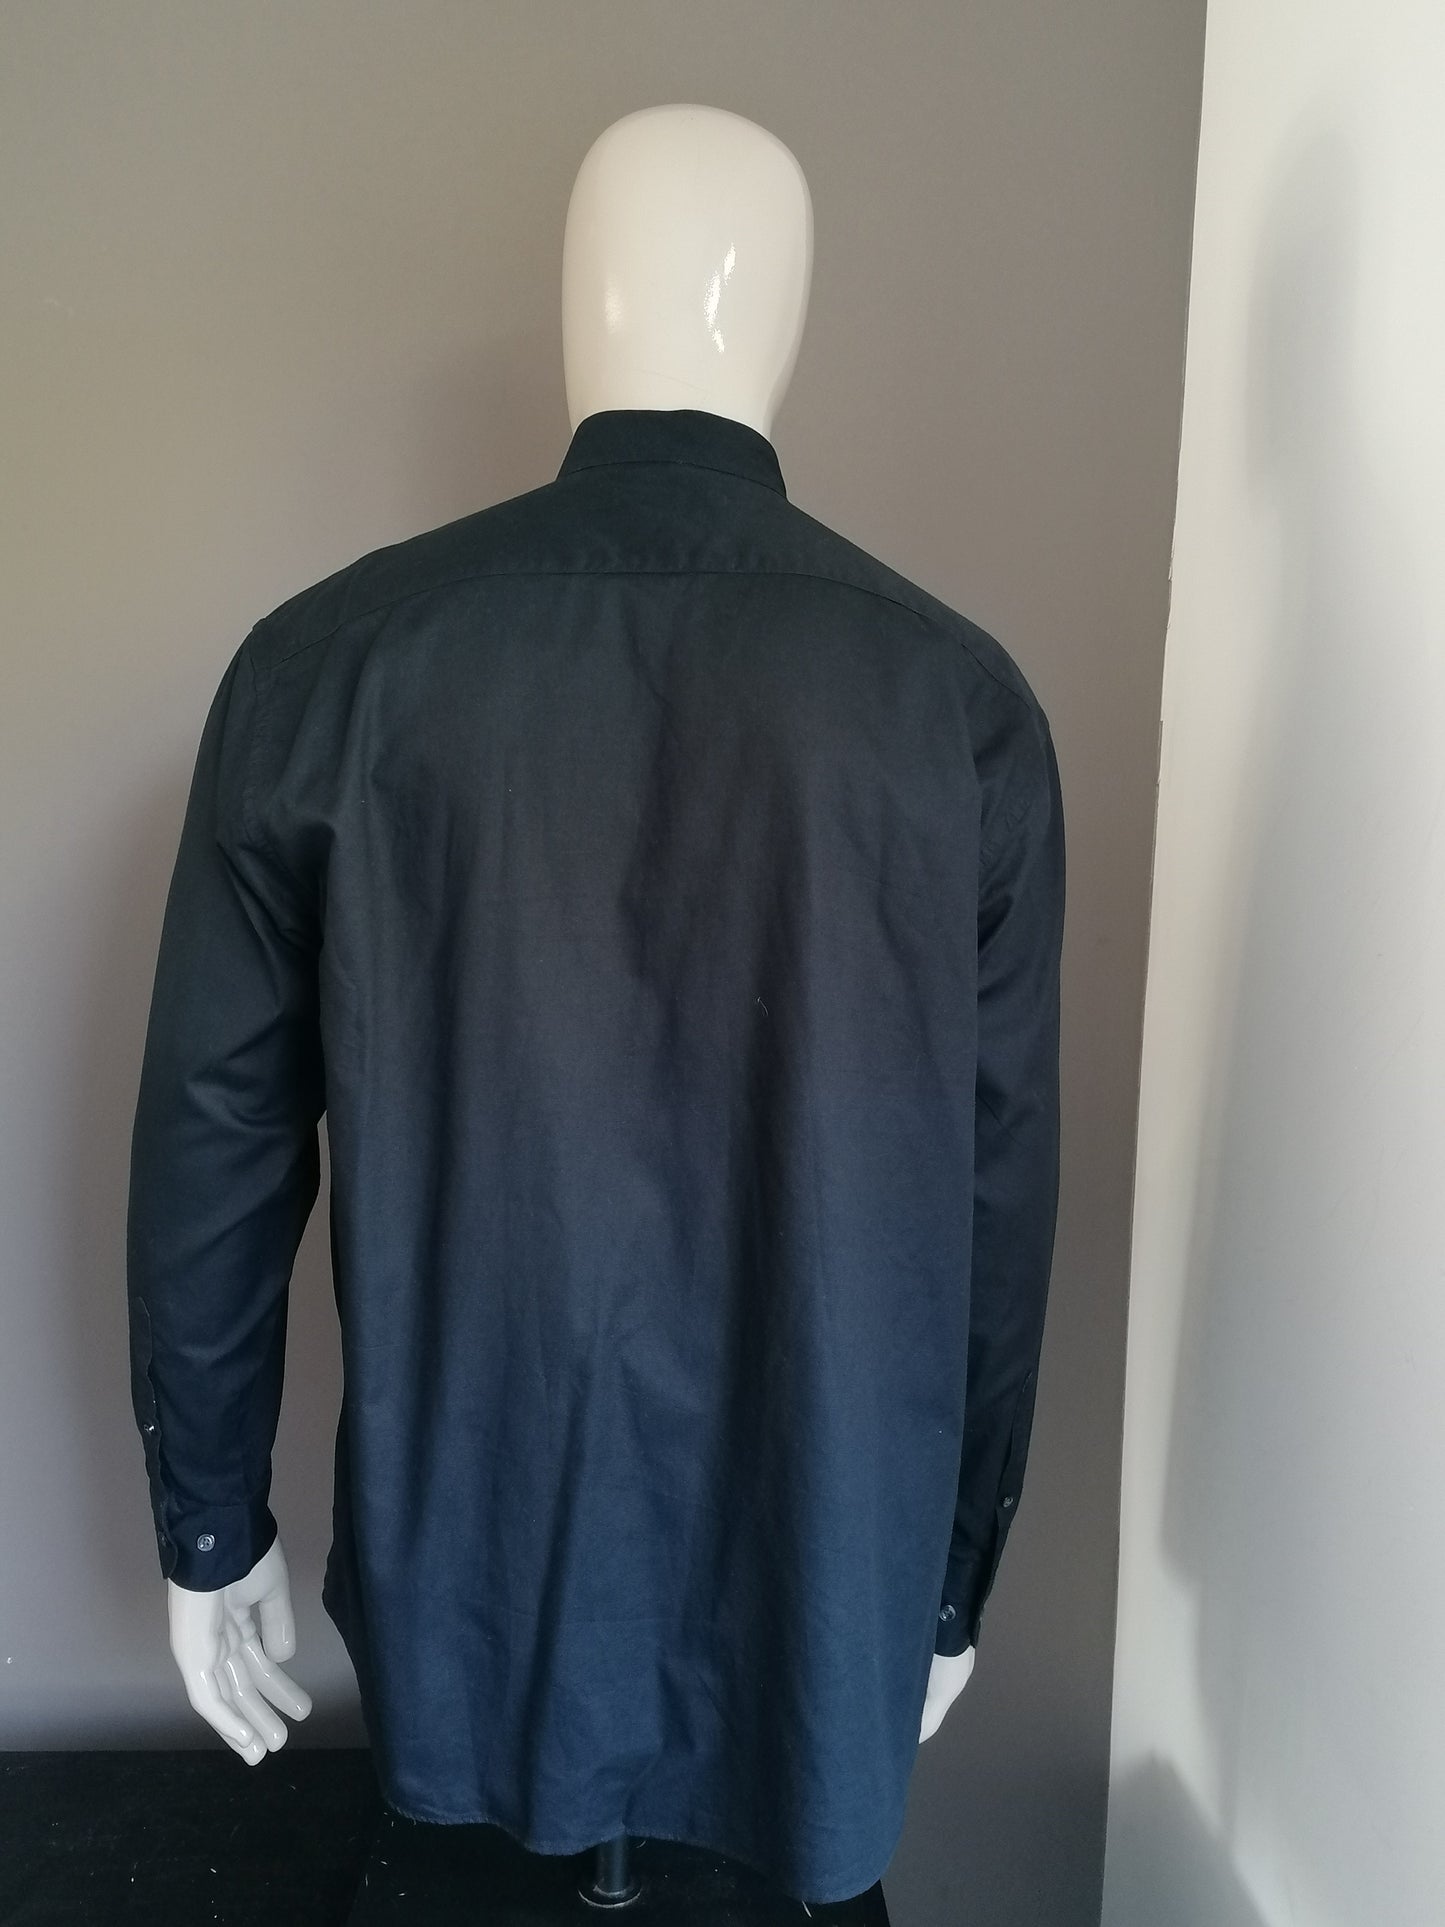 Camisa McEarl con vertical / agricultores / collar MAO .. de color negro. Tamaño XL - XXL / 2XL.